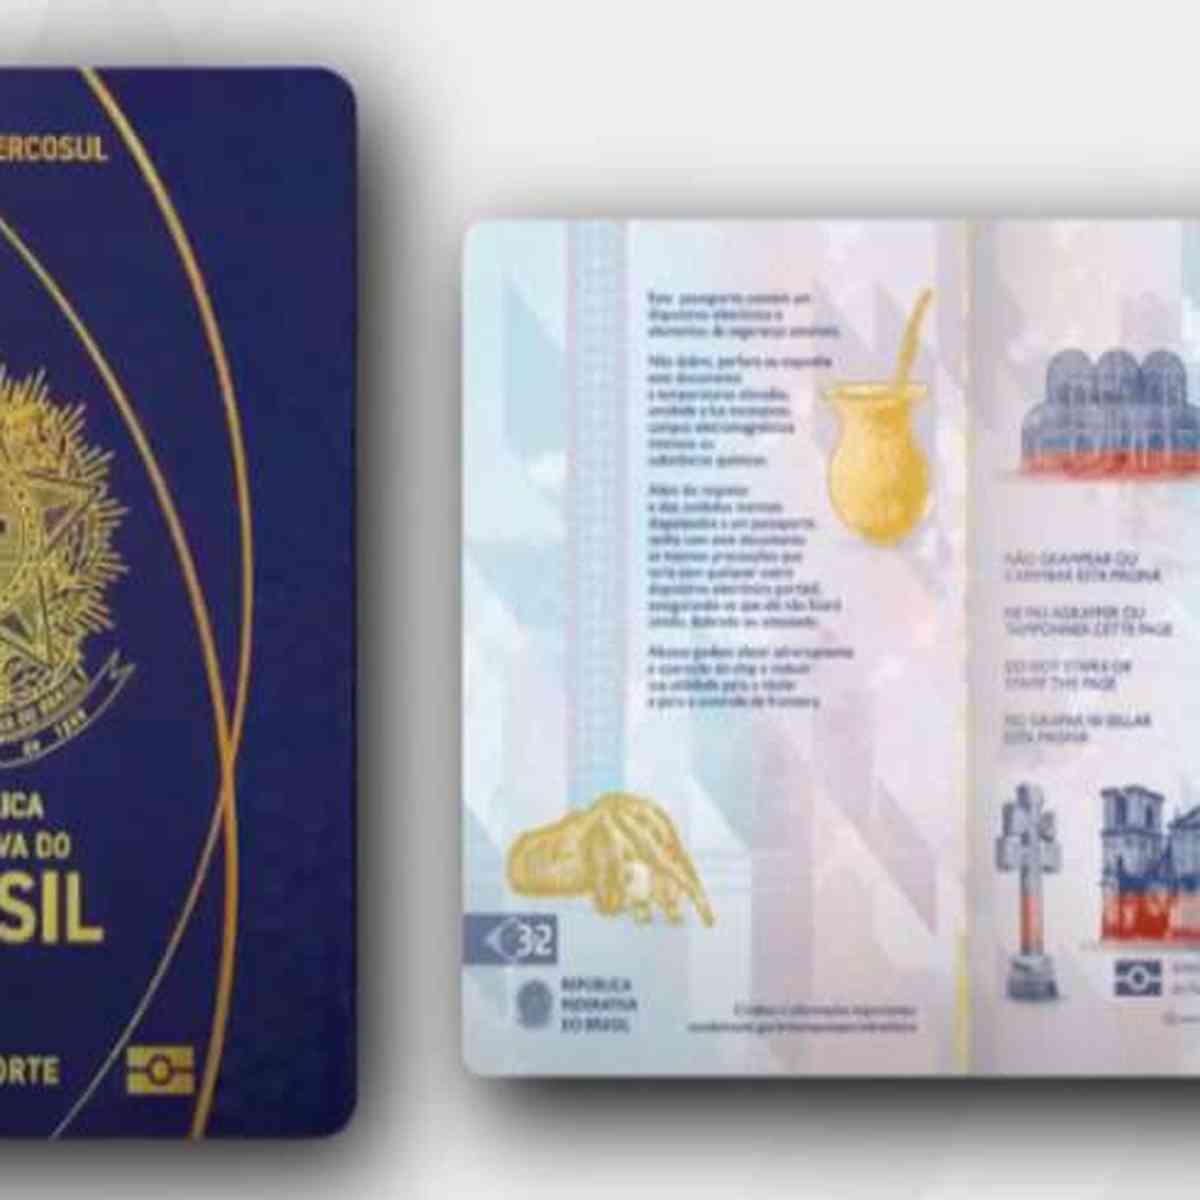 Novo passaporte começa a ser emitido a partir desta terça - Nacional -  Estado de Minas